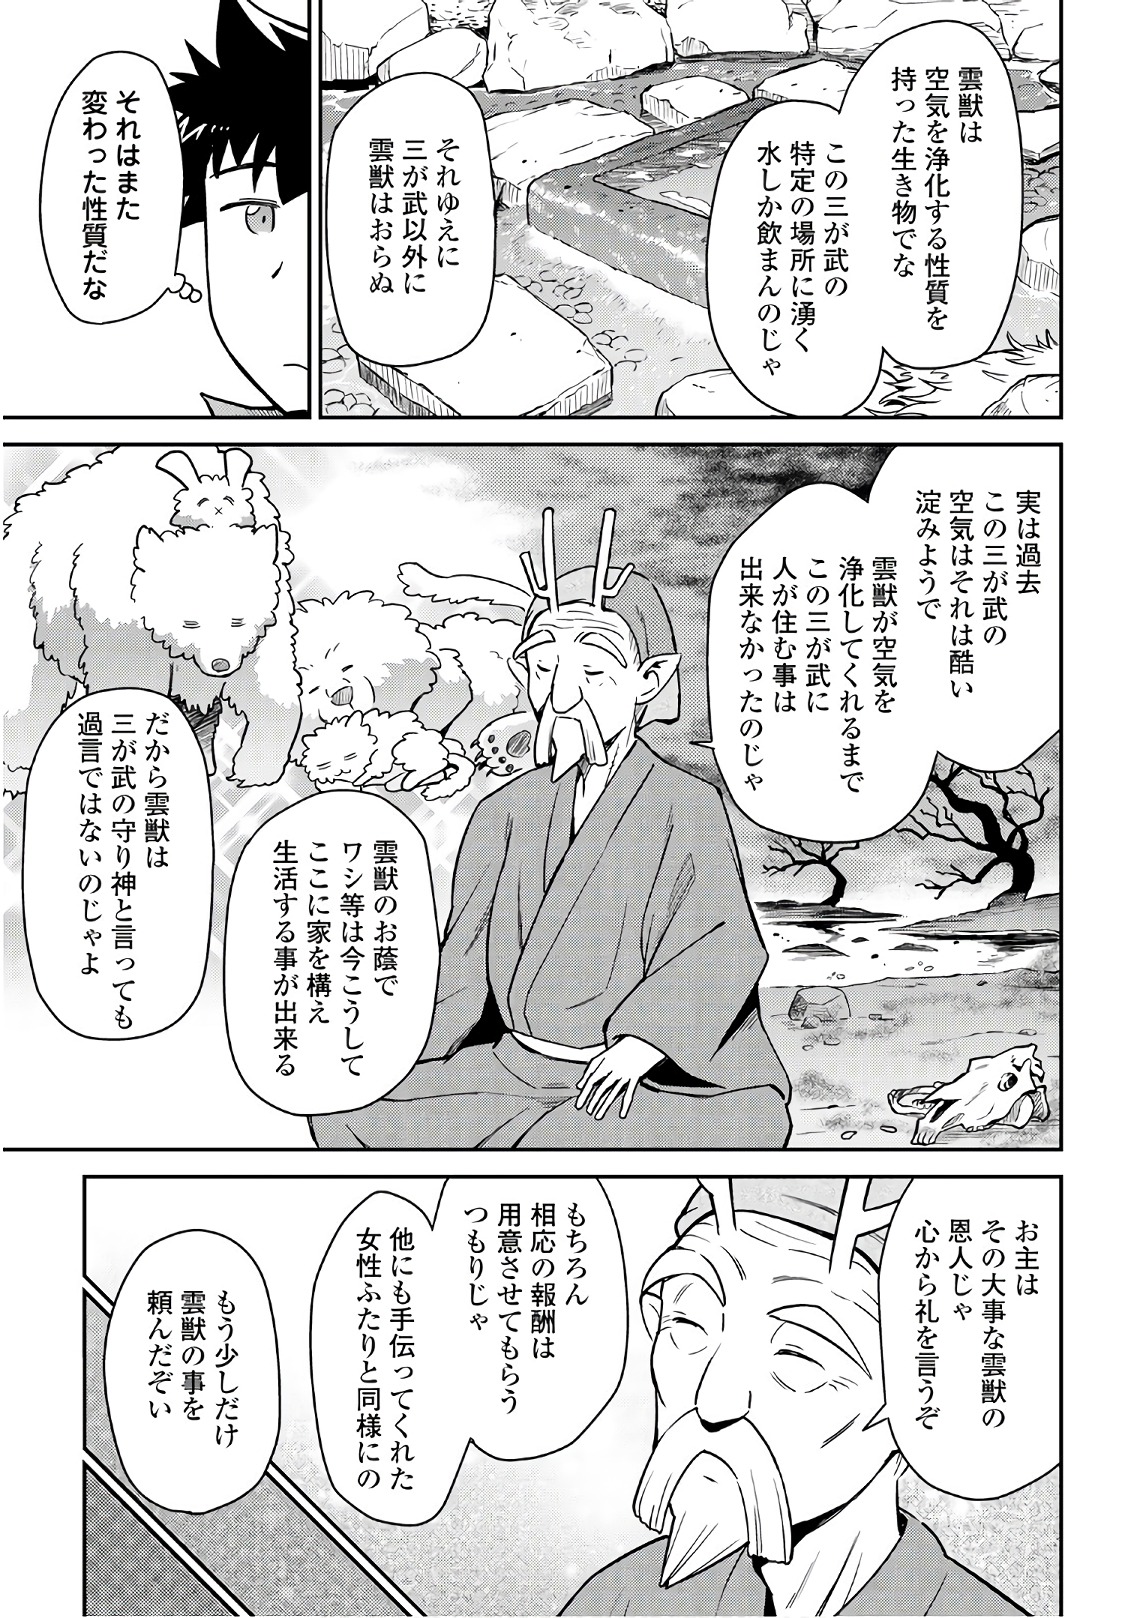 Toaru Ossan no VRMMO Katsudouki - Chapter 43 - Page 5